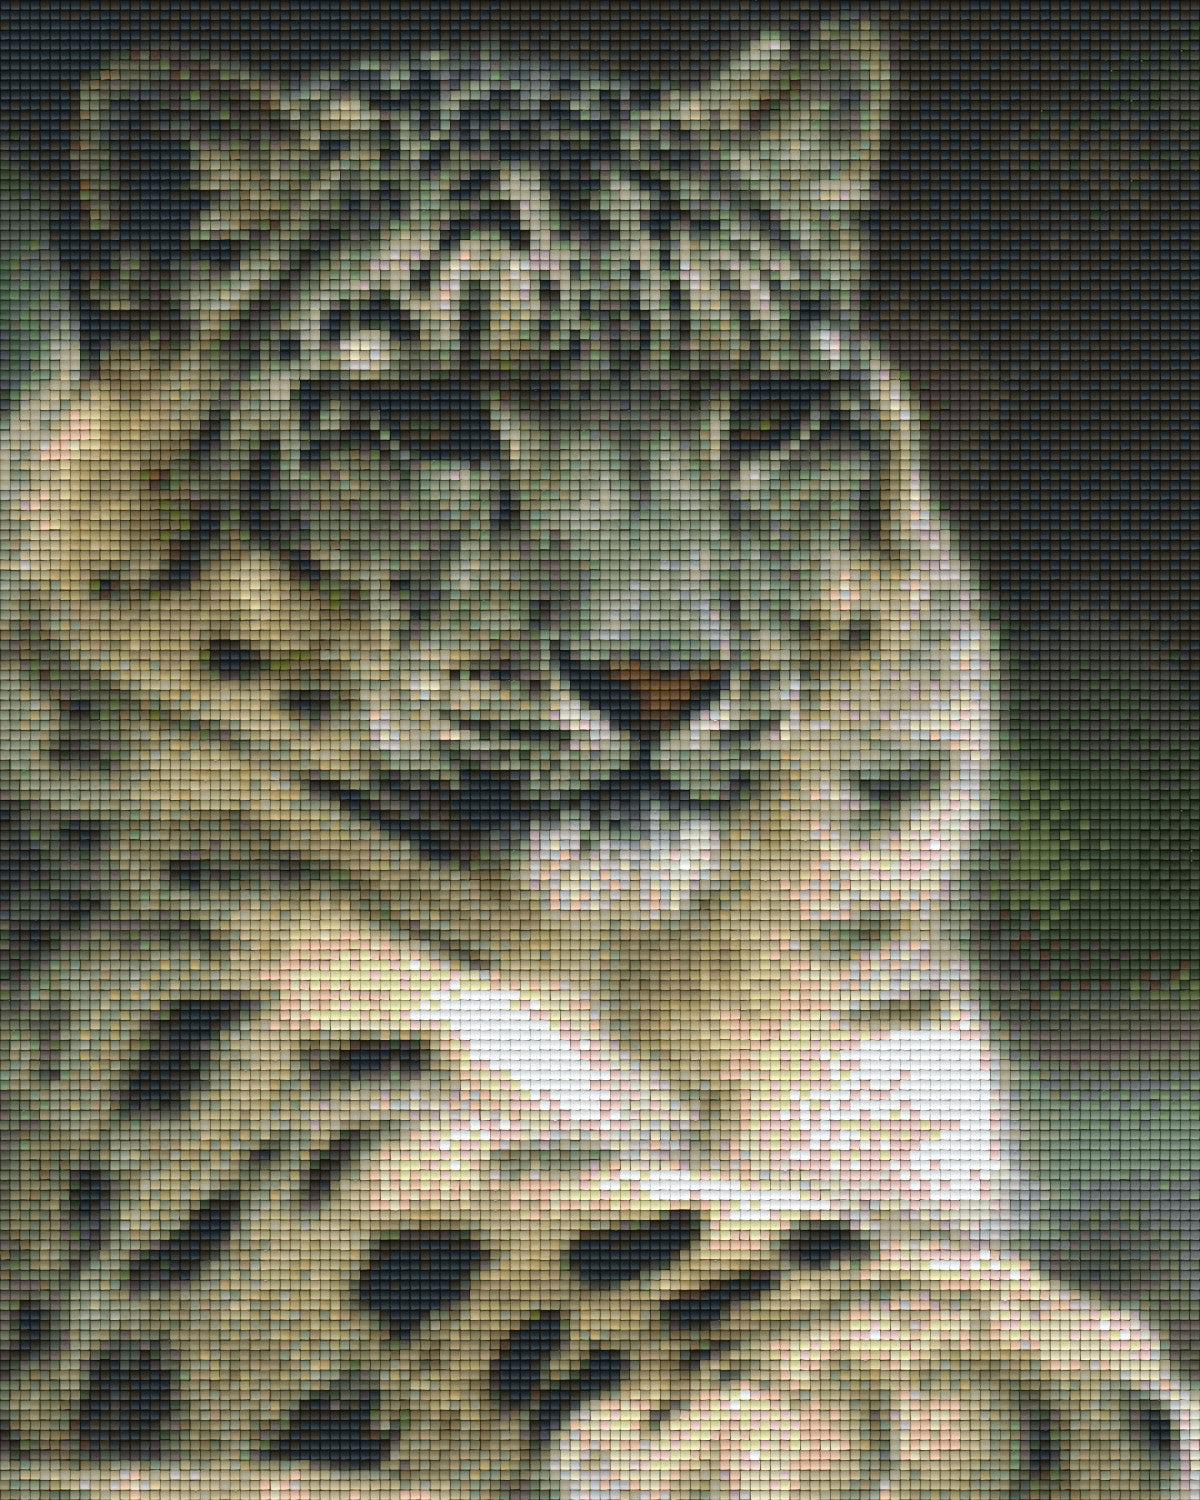 Pixelhobby Klassik Vorlage - Weißer Tiger 2